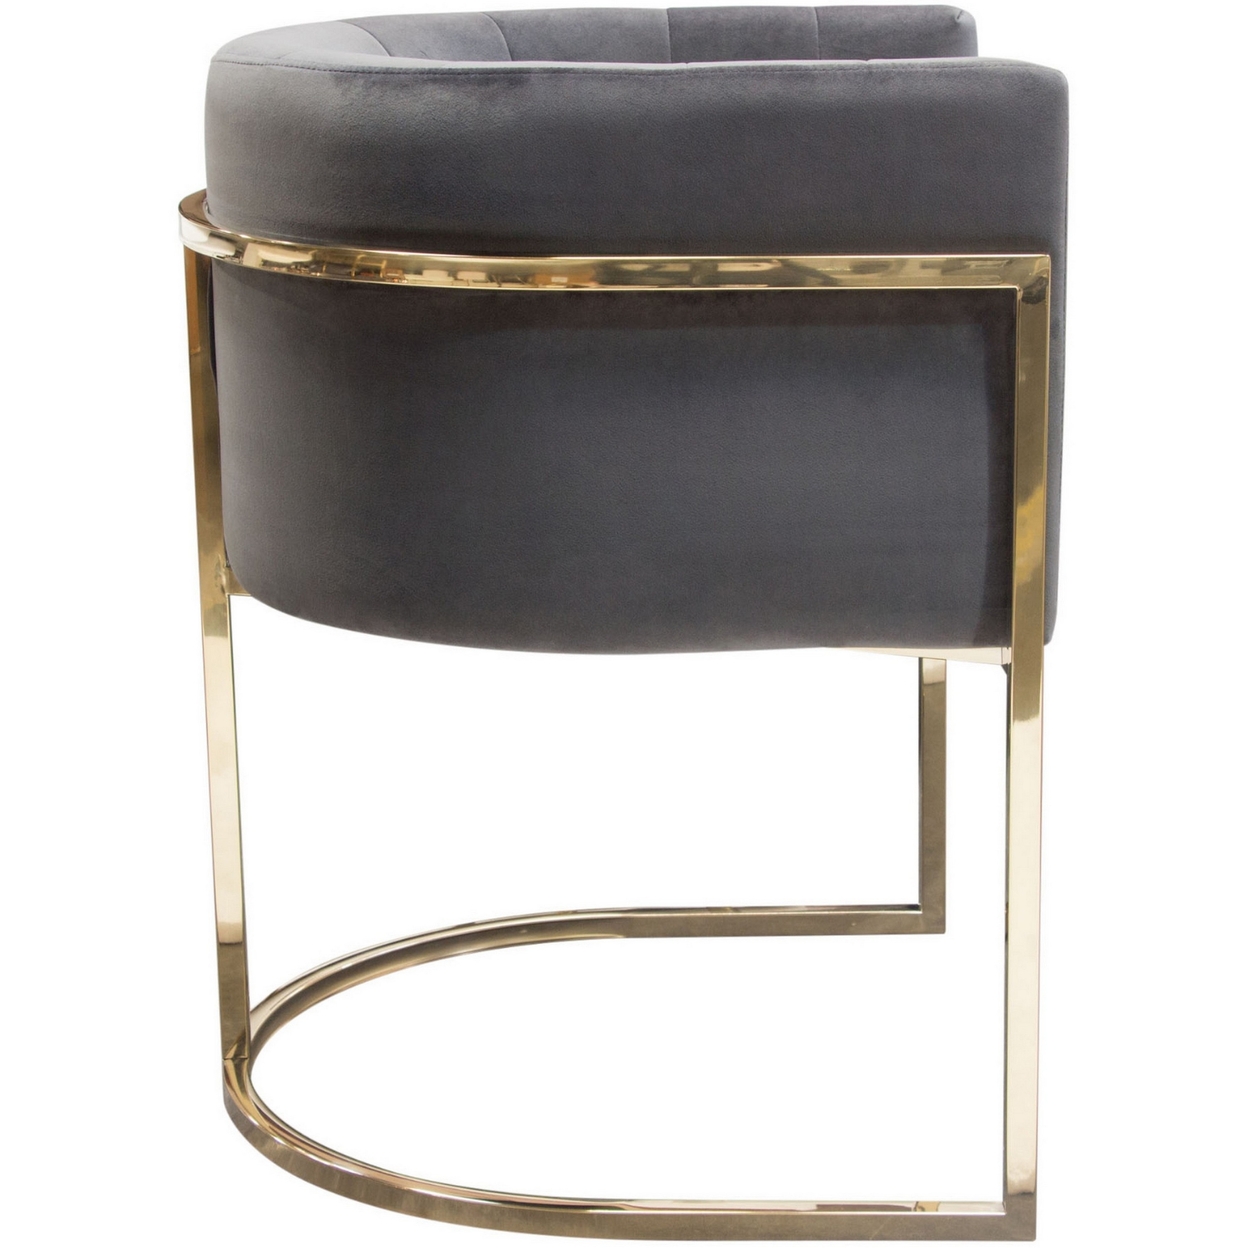 Meha 24 Inch Cantilever Dining Chair, Gray Velvet Upholstery, Gold Frame- Saltoro Sherpi